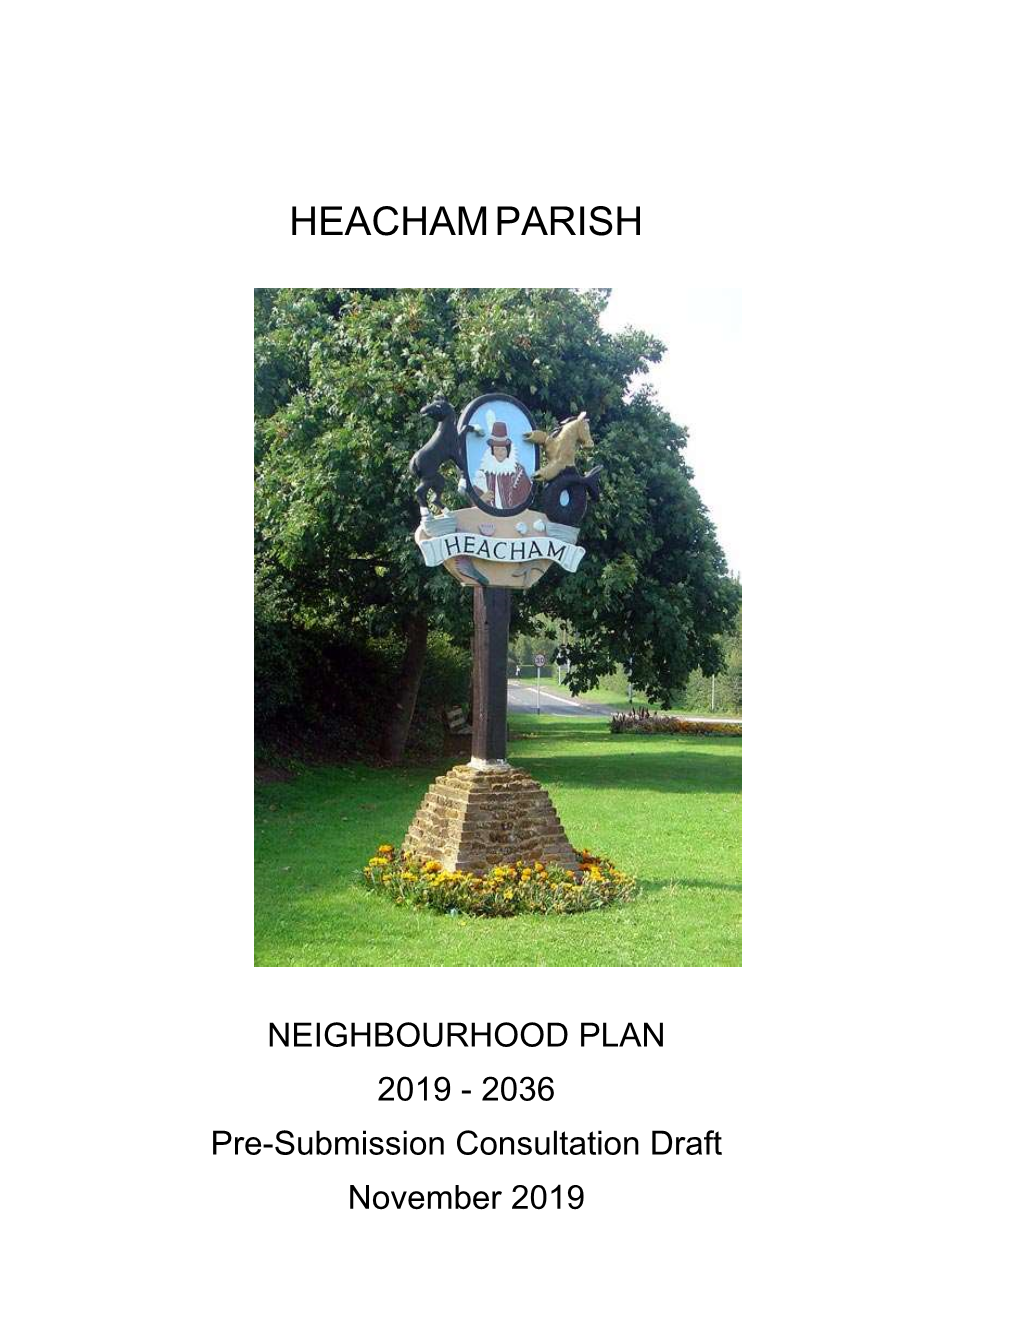 Heachamparish